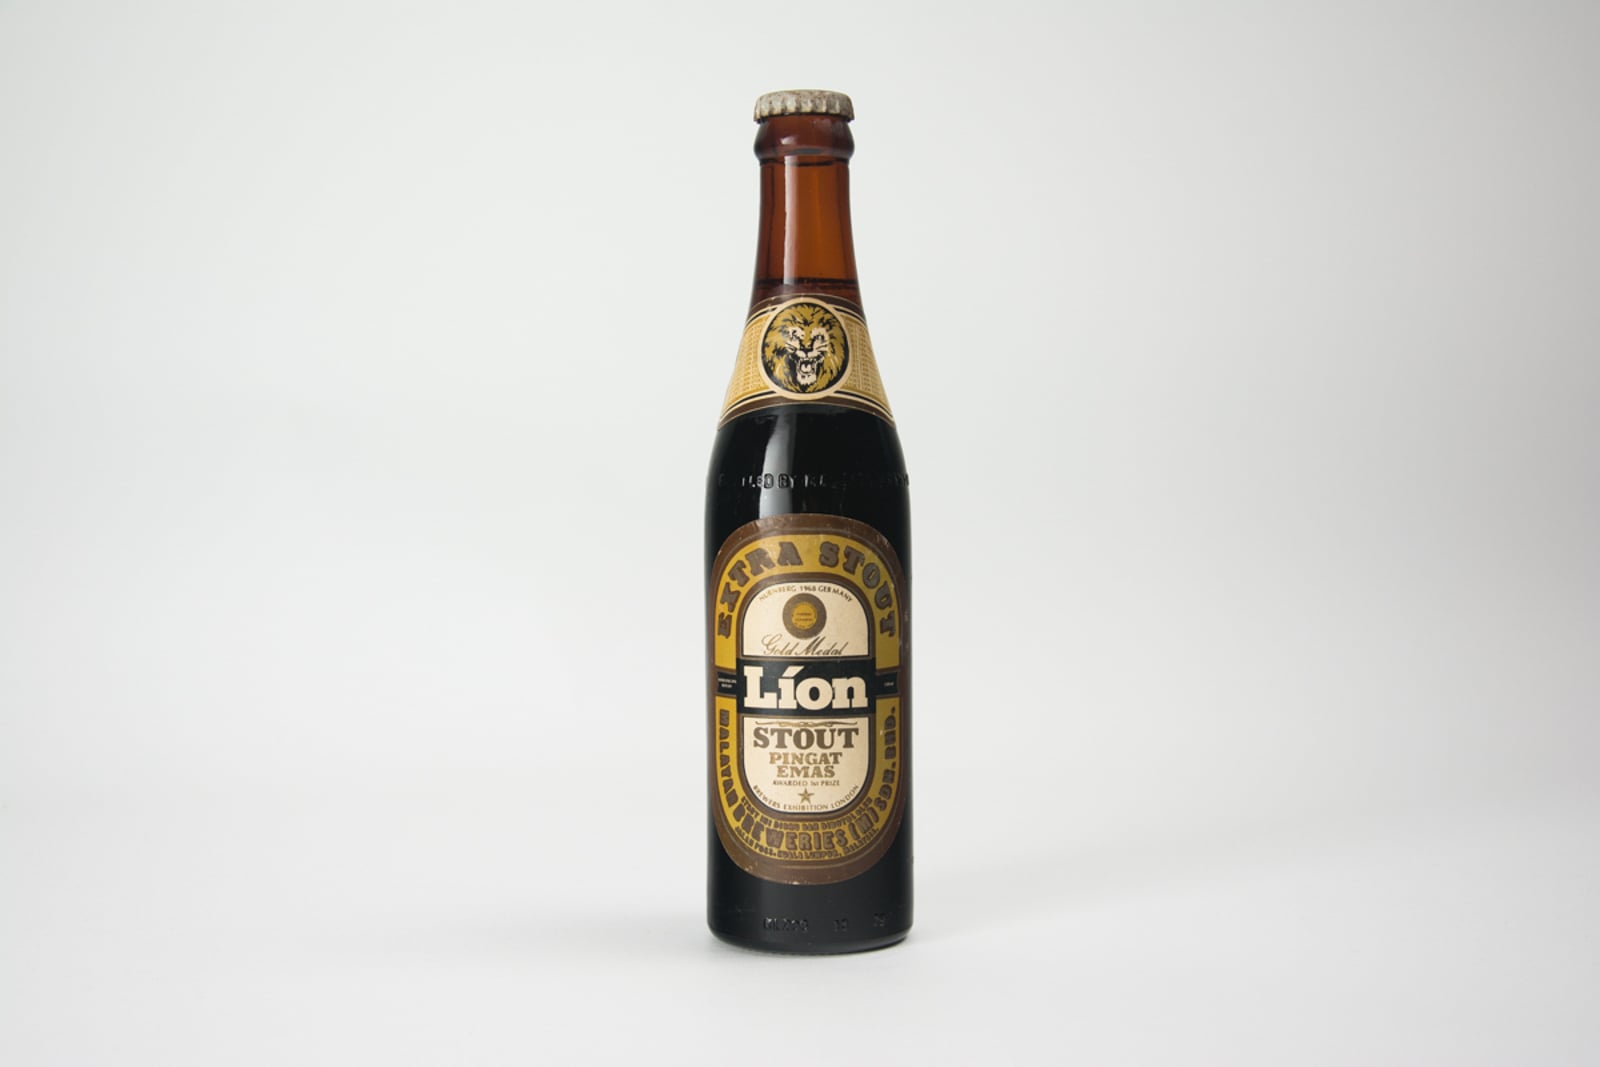 Gold Medal Lion Stout "Pingat Emas" Vintage Bottle